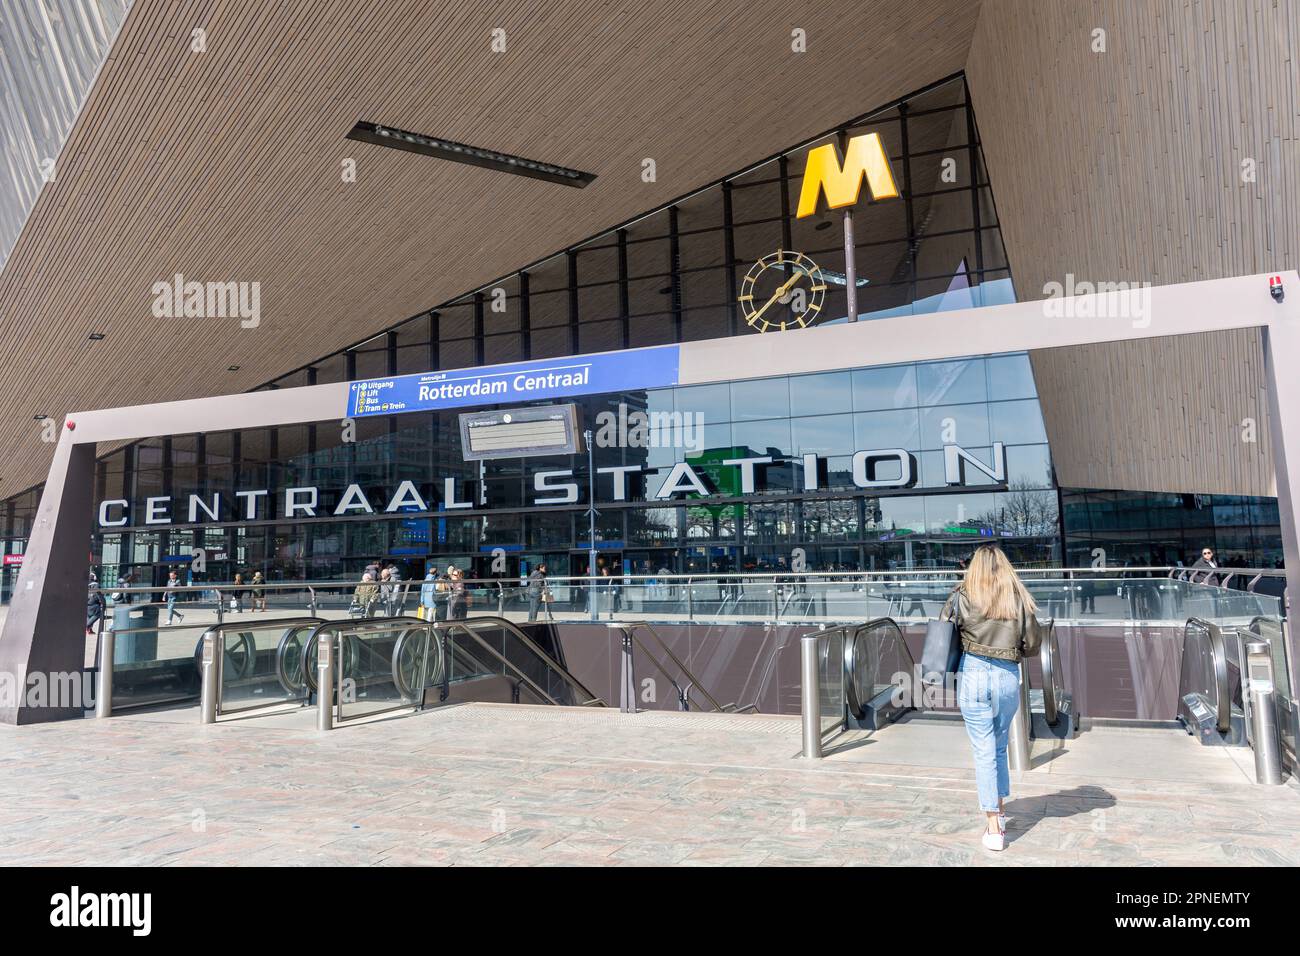 Entrée au métro, gare centrale de Rotterdam, Stationsplein, Rotterdam Centrum, Rotterdam, Province de la Hollande du Sud, Royaume des pays-Bas Banque D'Images